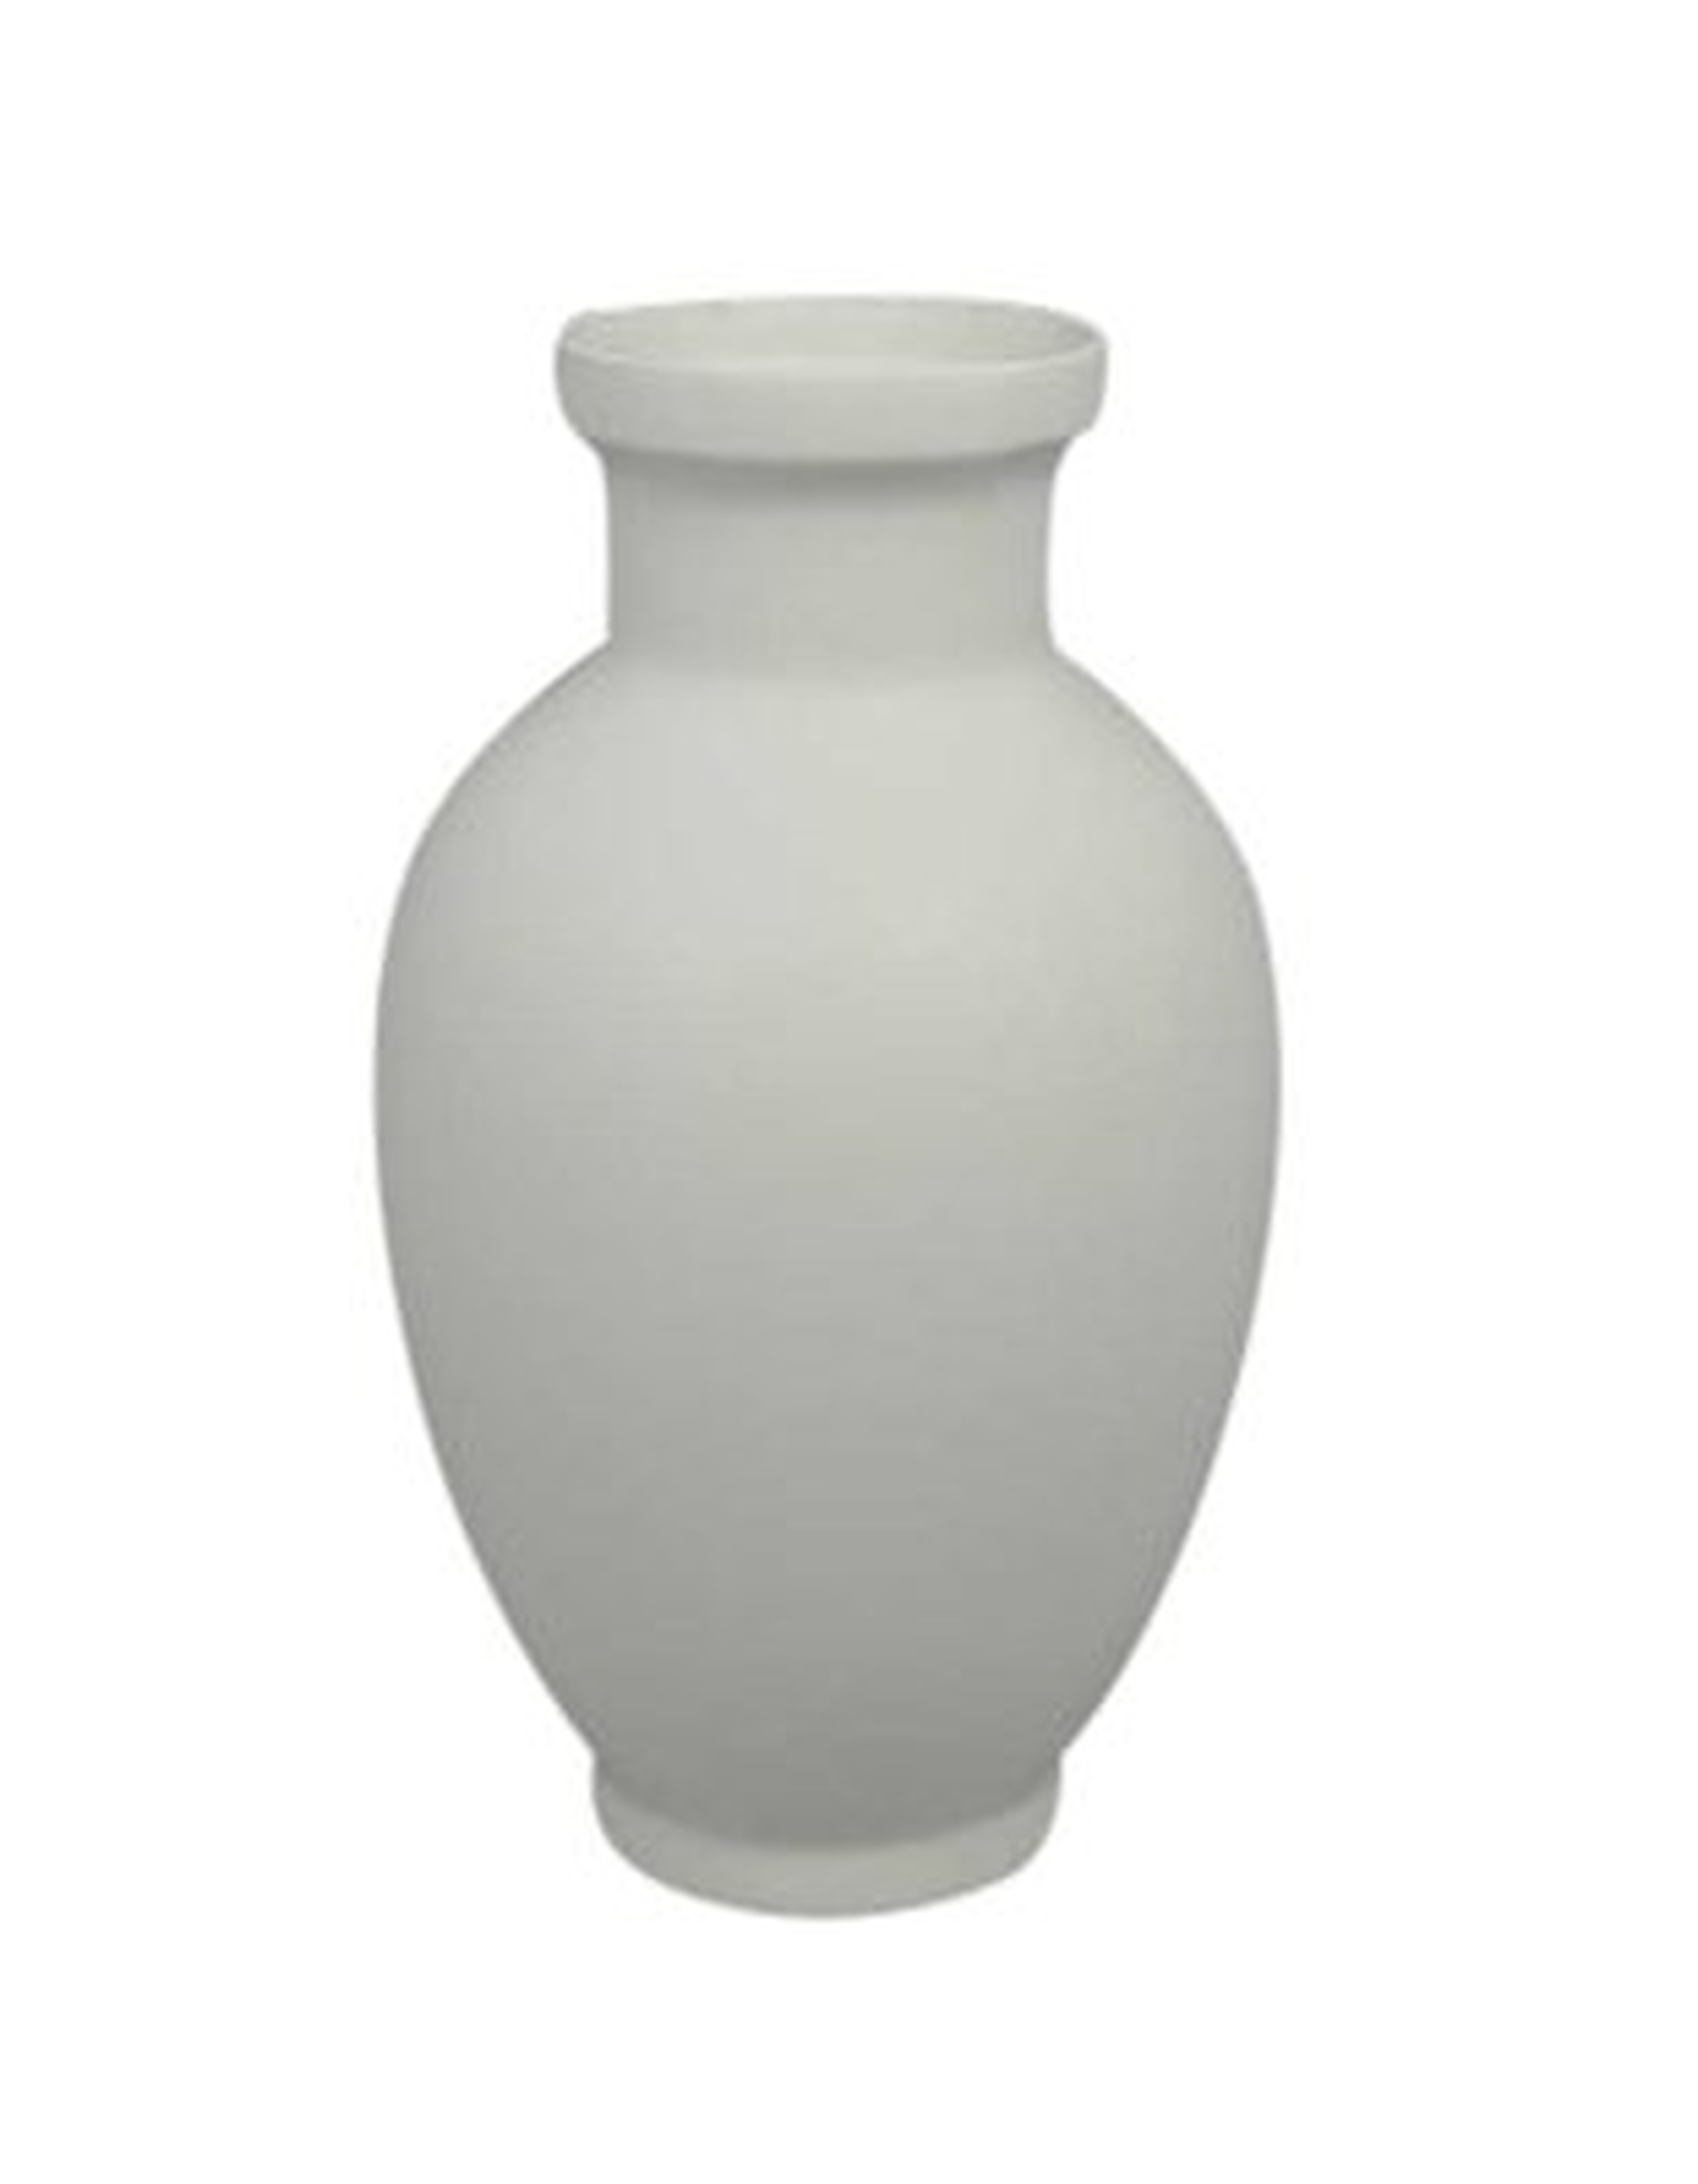 Flawless Decorative Ceramic Table Vase - Wayfair